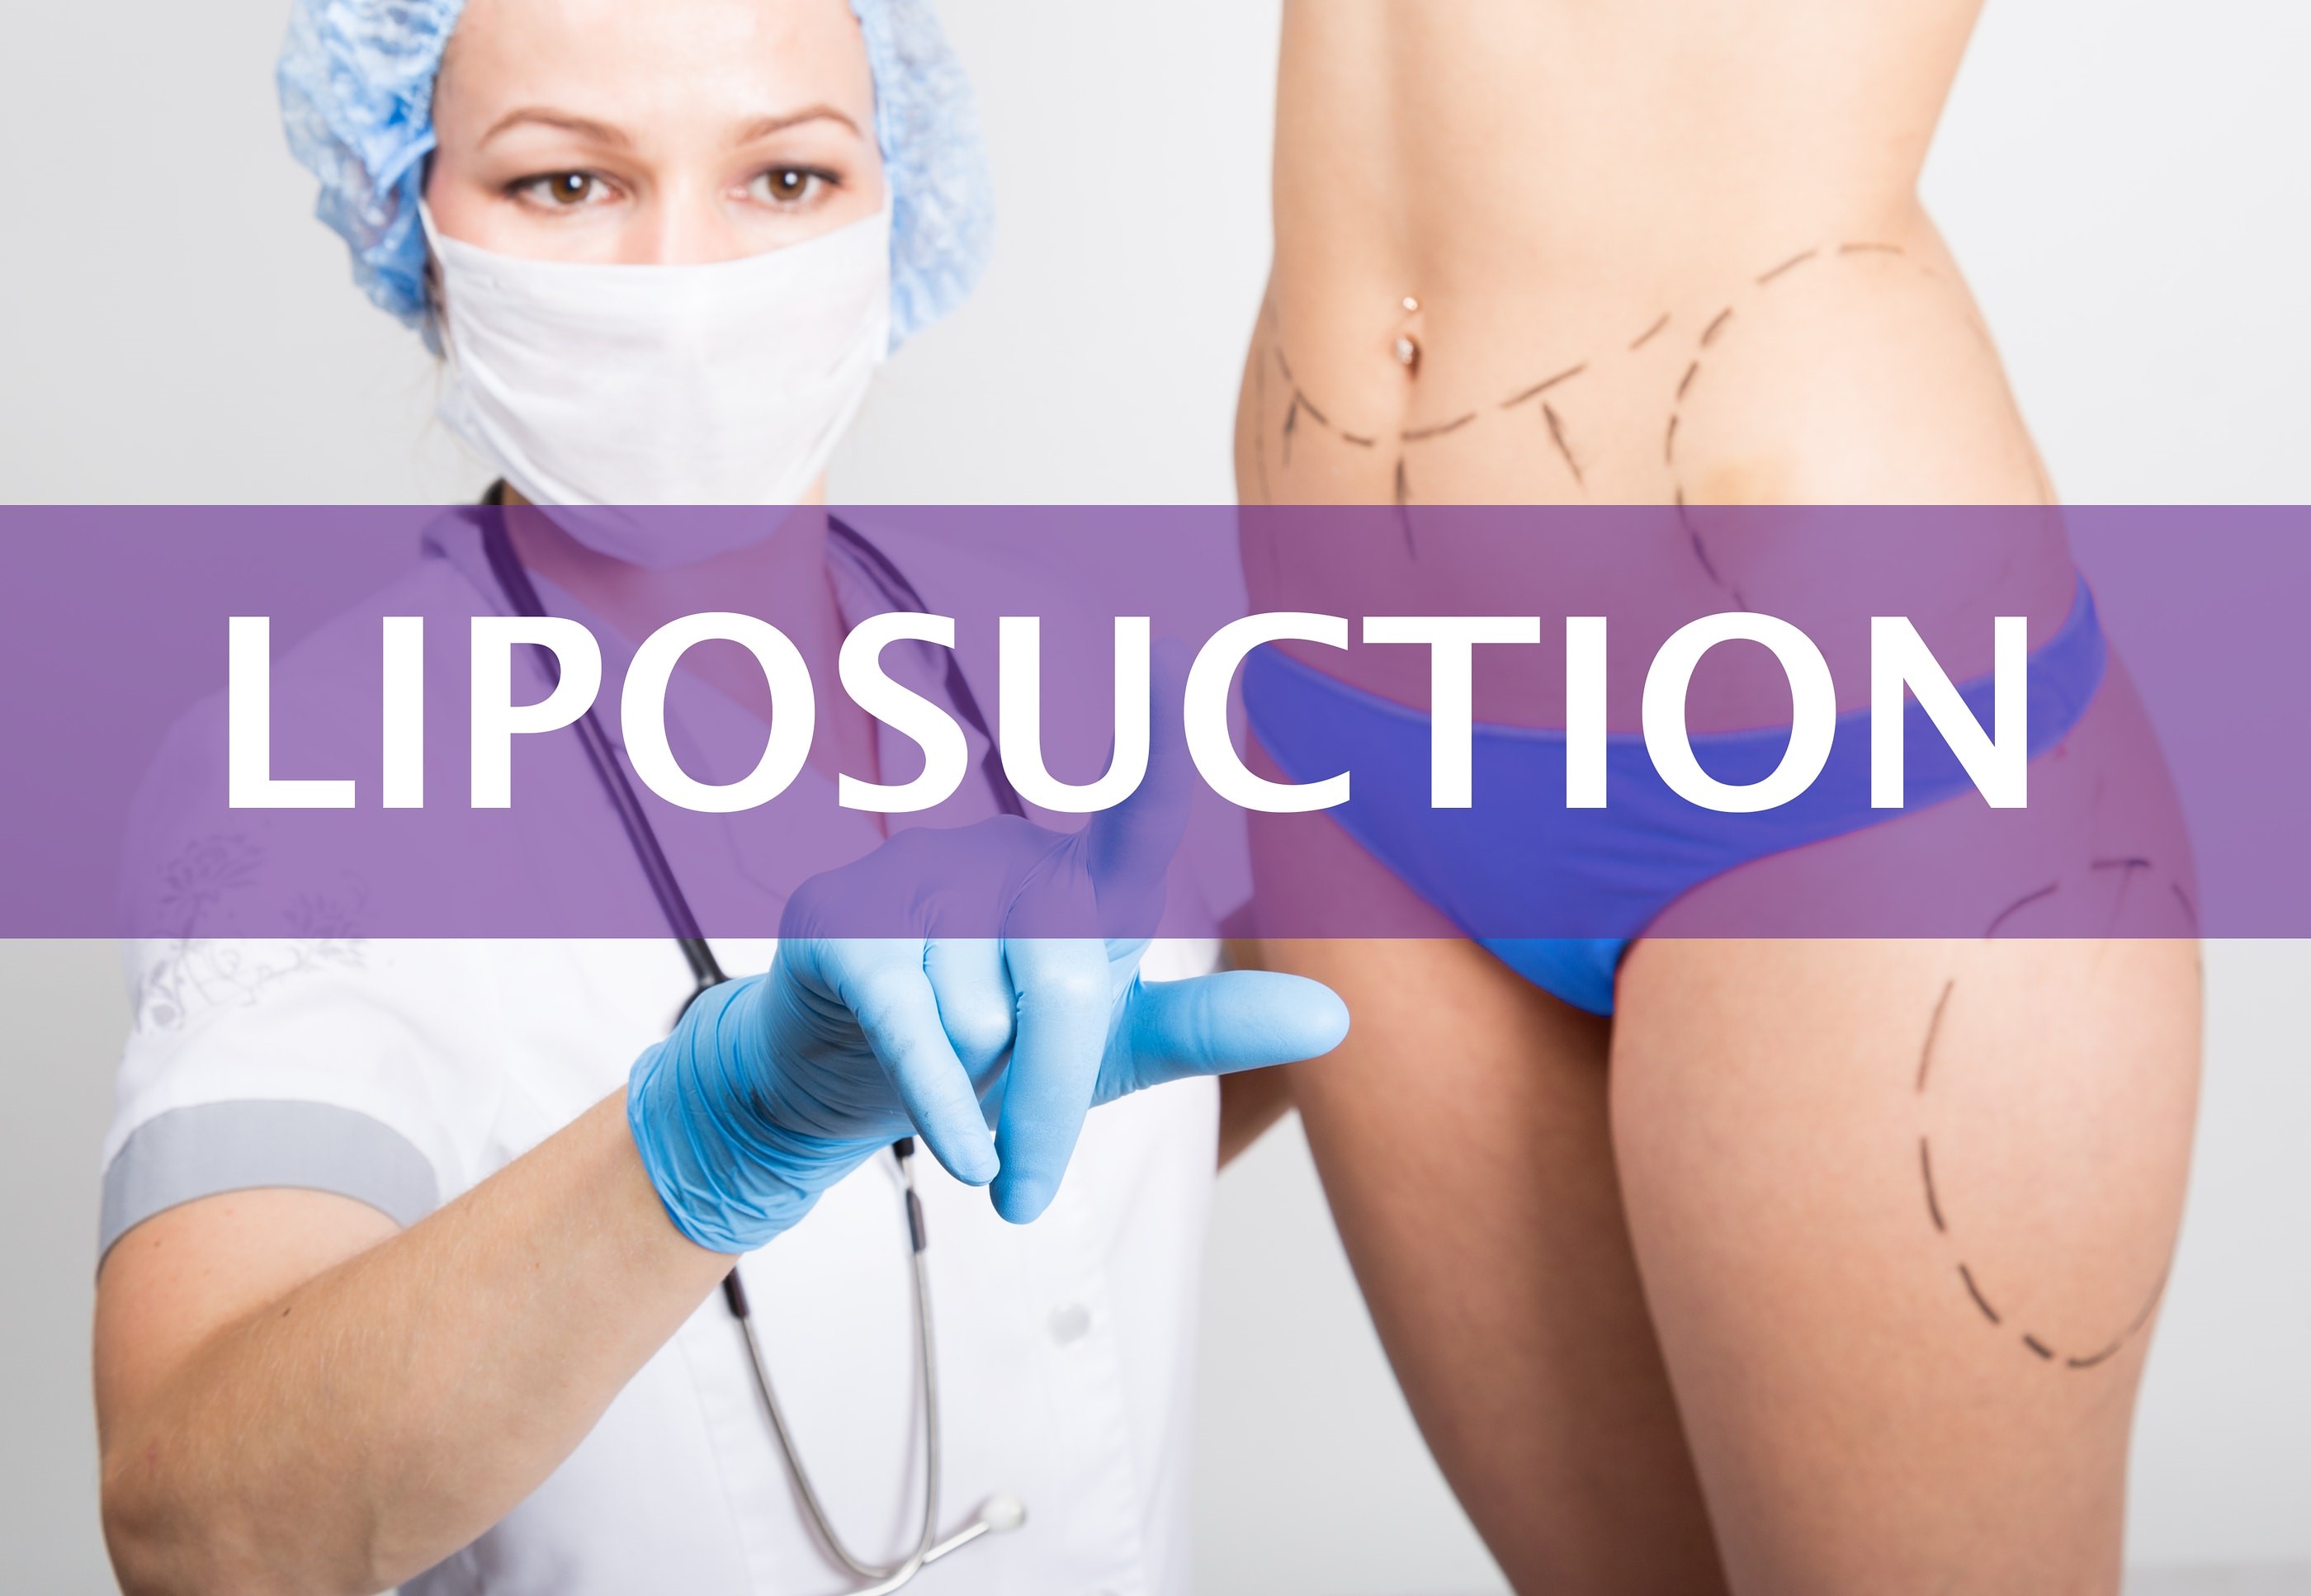 Dr. Trussler Liposuction Surgery Austin